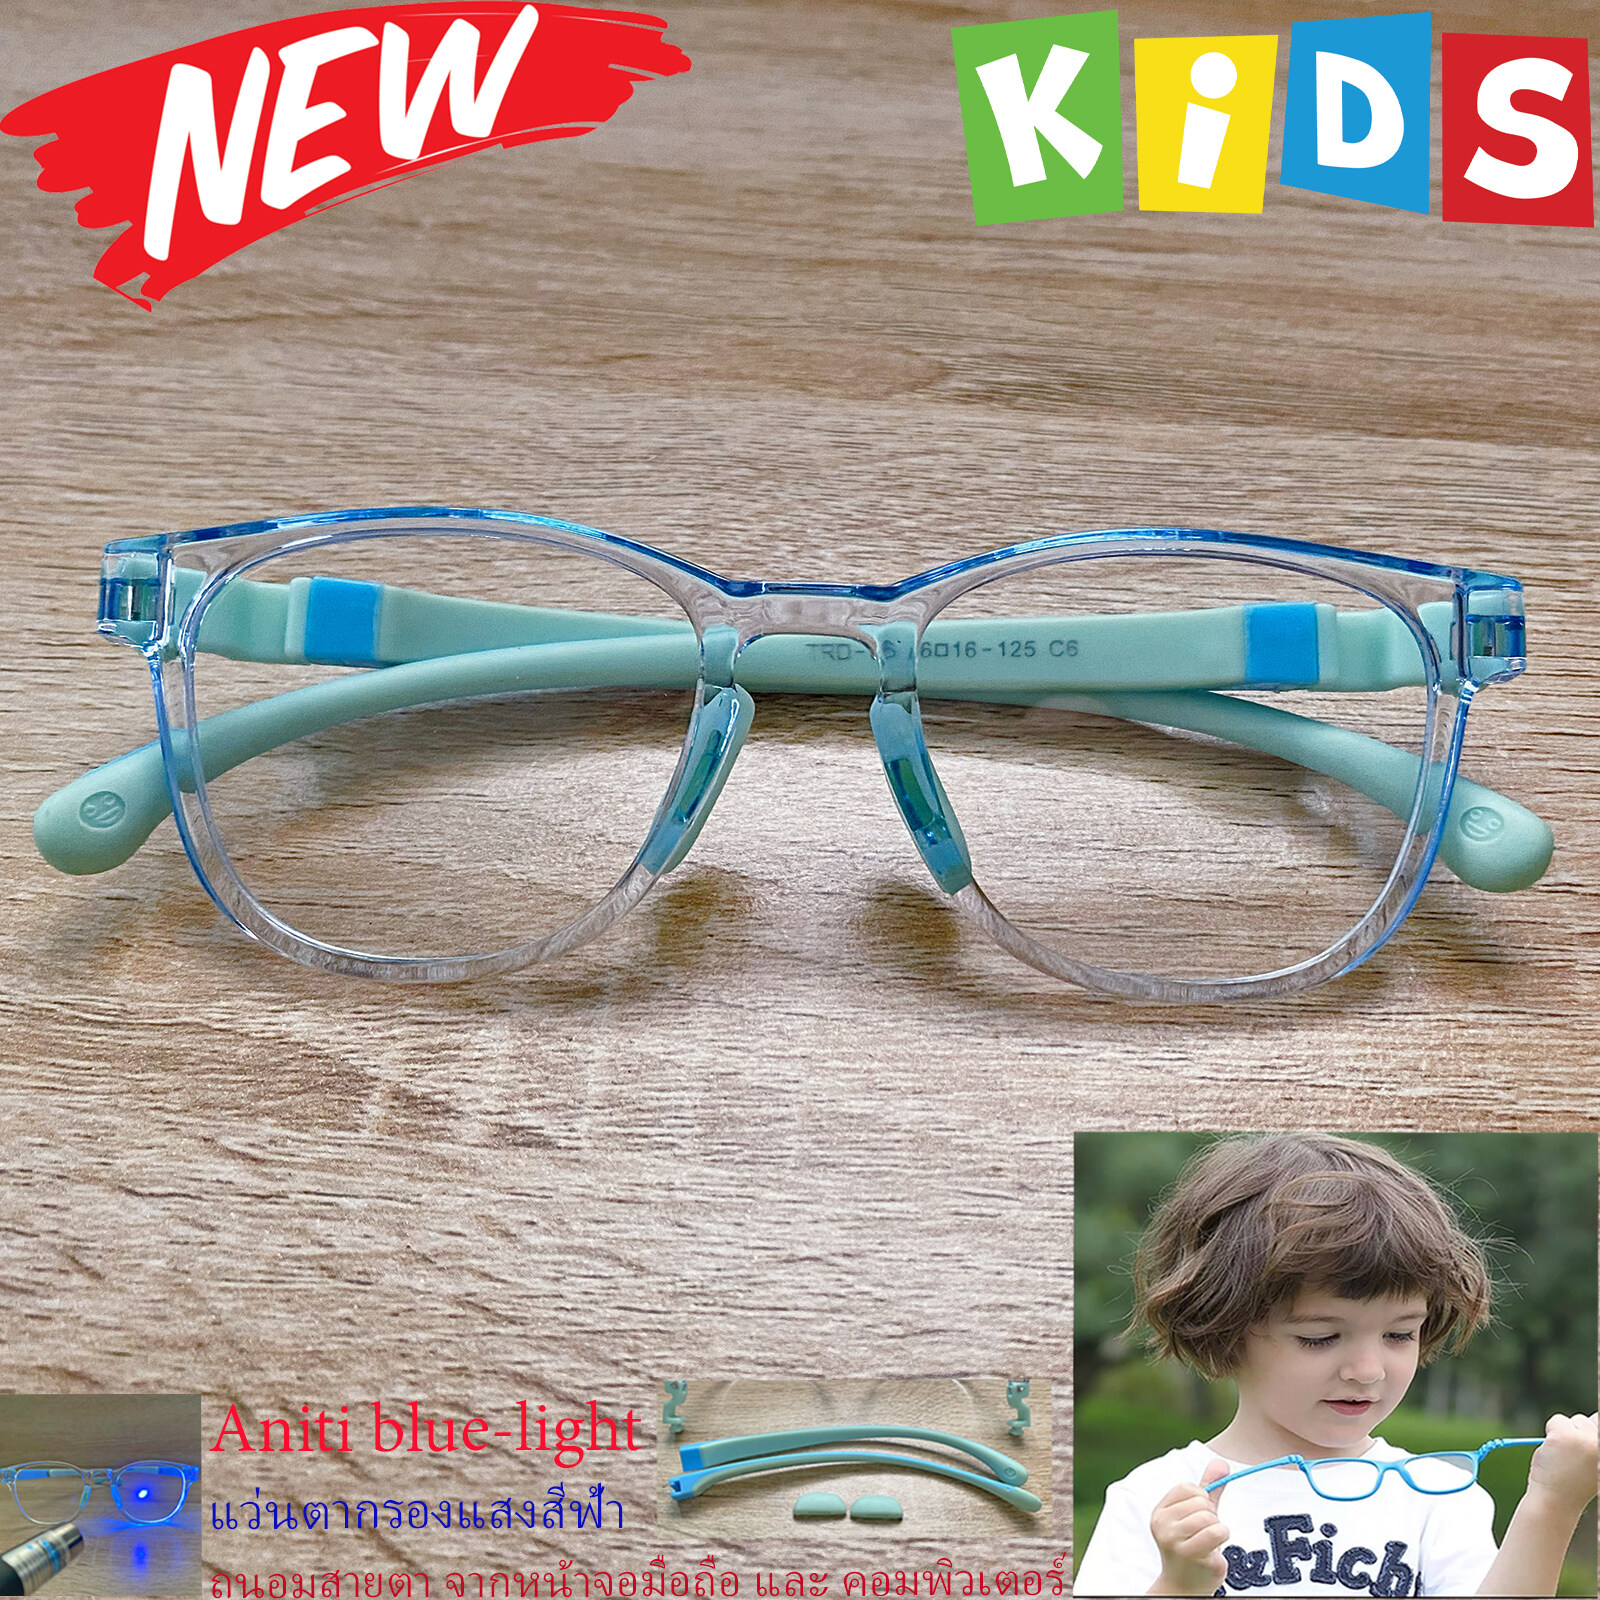 แว่นตาเด็ก กรองแสง สีฟ้า blue block แว่นเด็ก บลูบล็อค รุ่น 06 สีฟ้า ขาข้อต่อยืดหยุ่น ถอดขาเปลี่ยนได้ วัสดุTR90 เหมาะสำหรับเลนส์สายตา